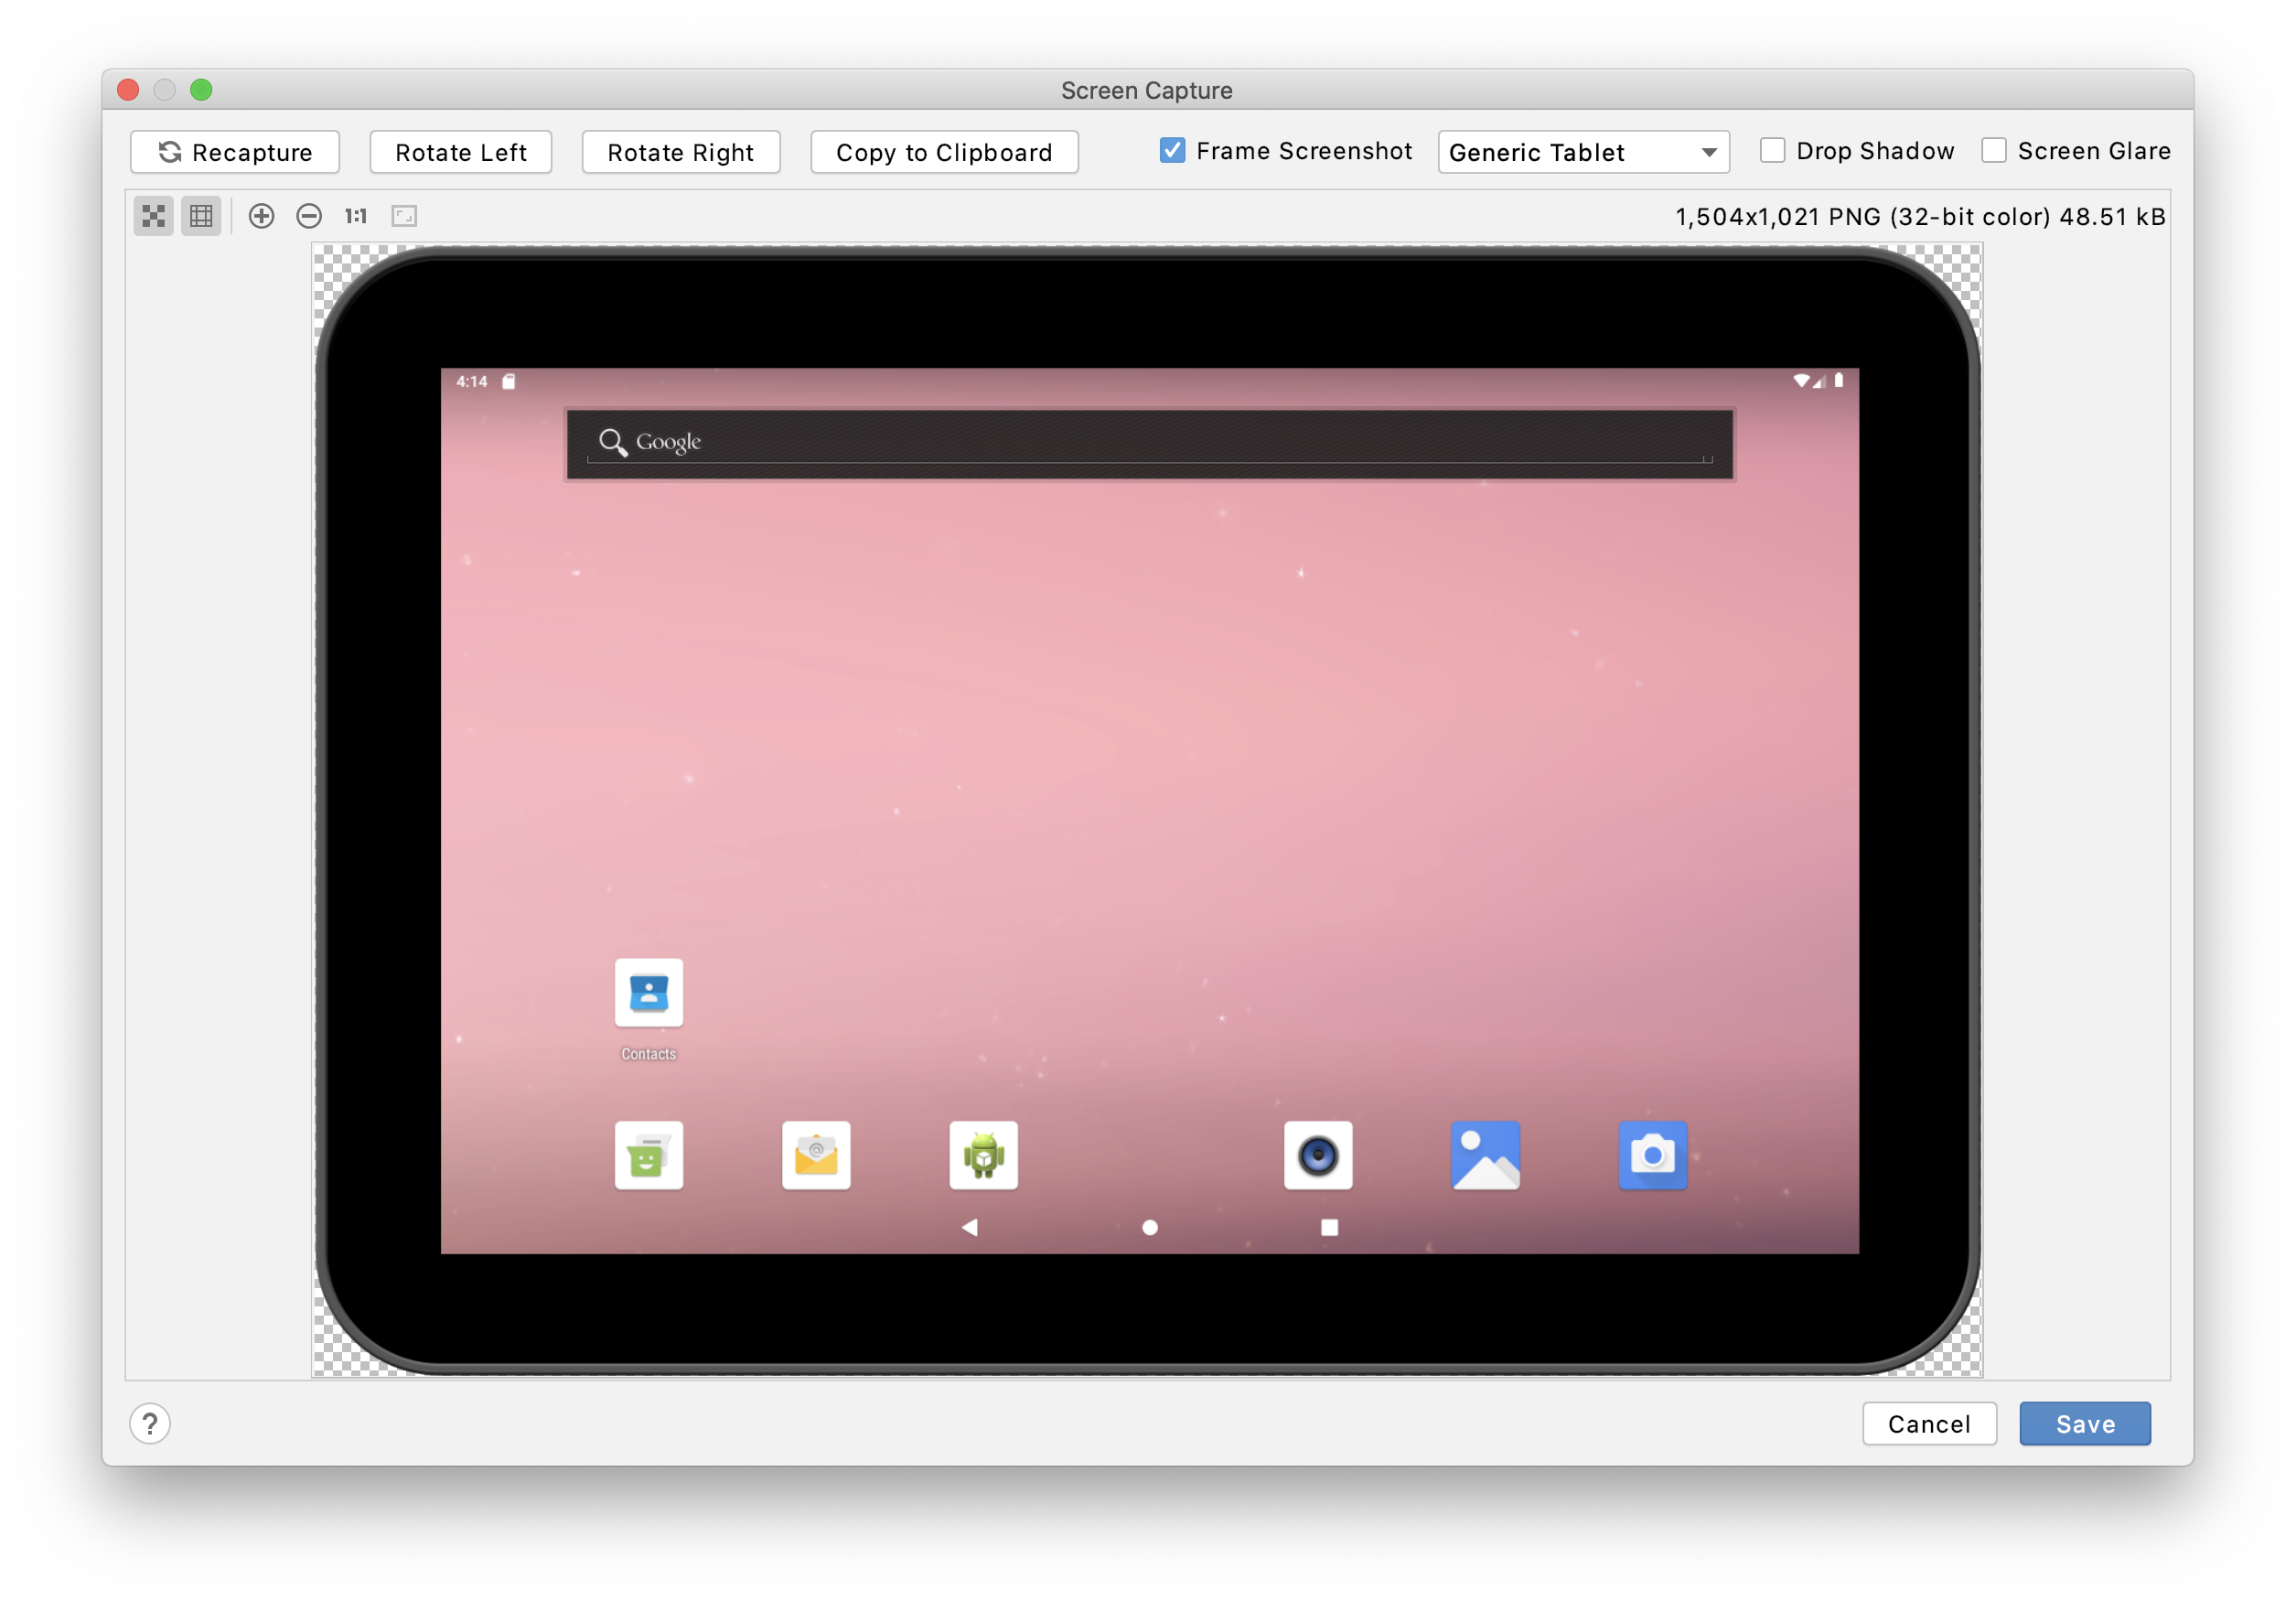 android studio in macbook